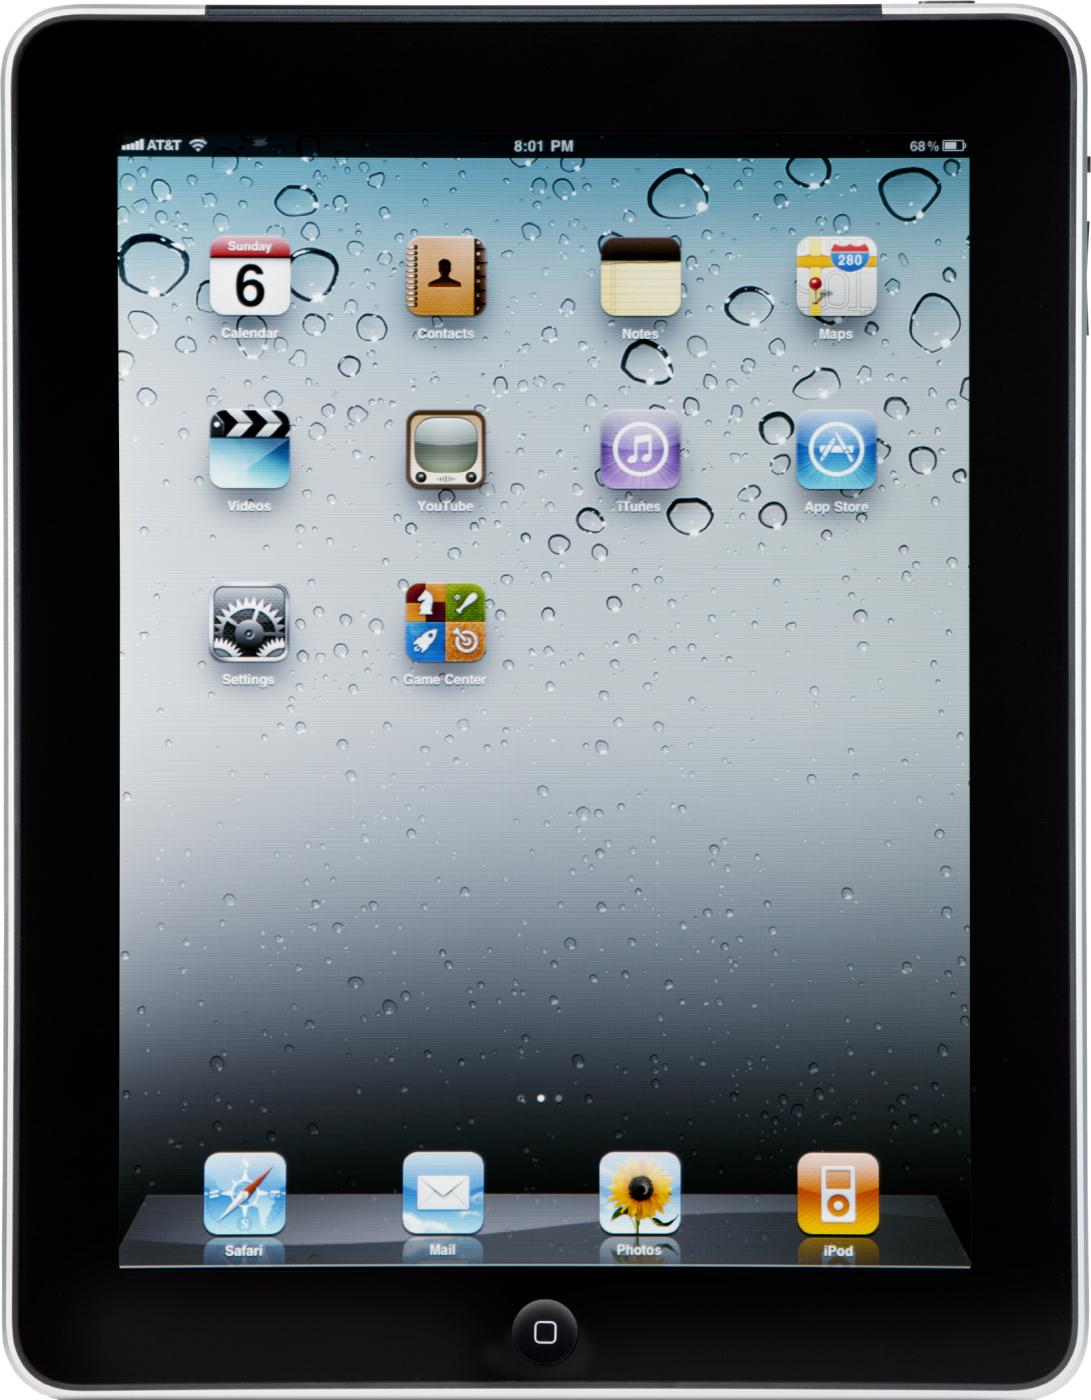  iPad 1 